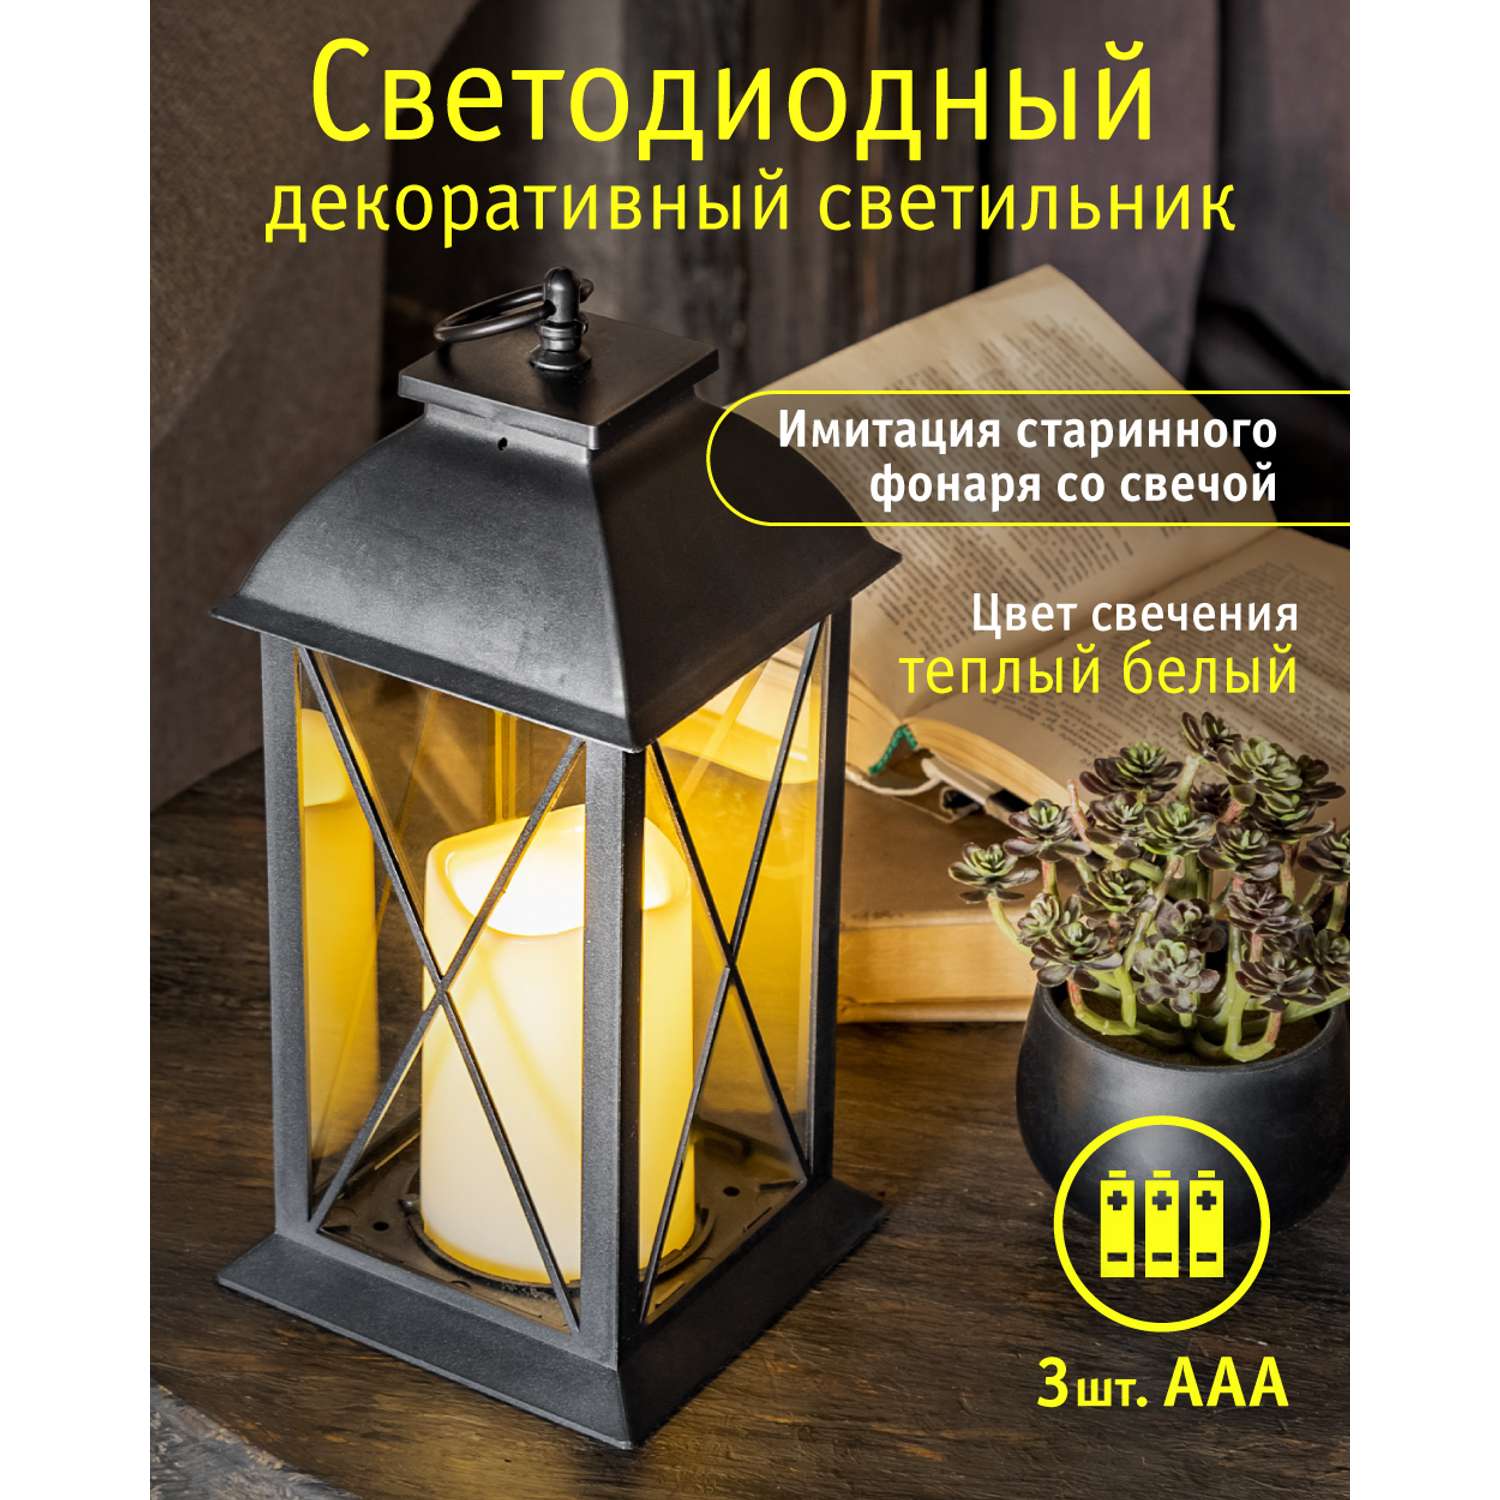 Декоративный светильник navigator светодиодный ночник для детской комнаты - фото 1